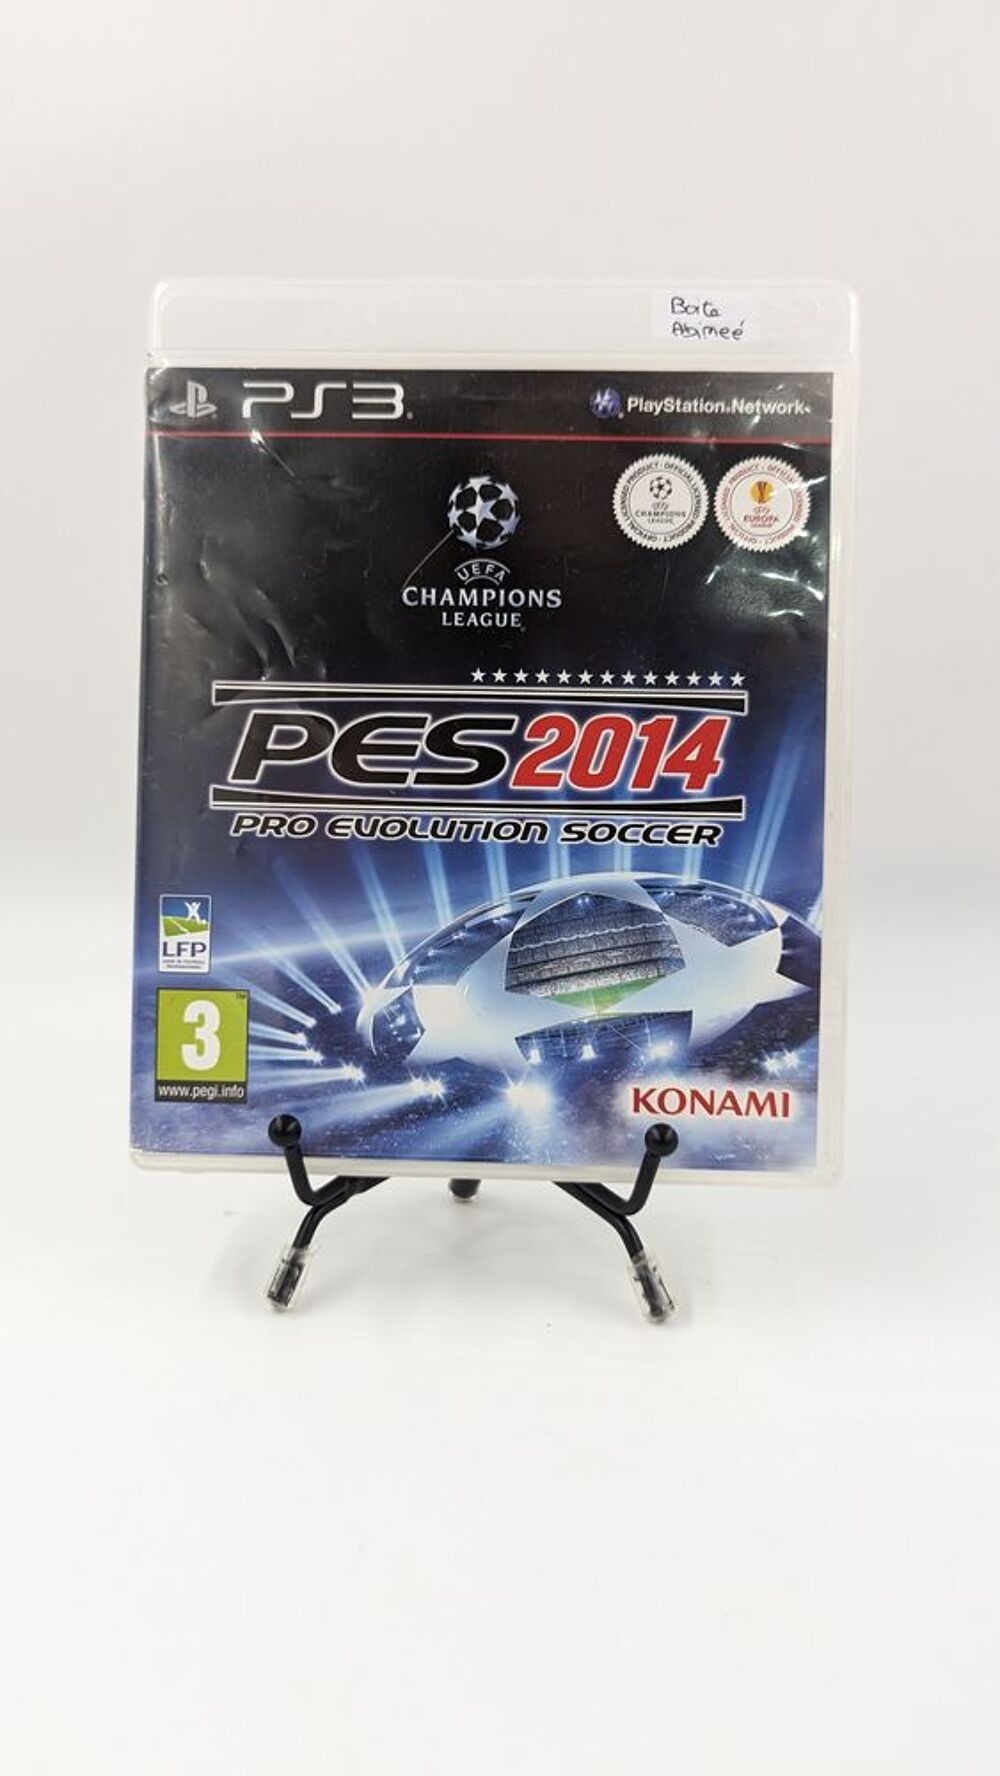 Jeu PS3 Playstation 3 Pro Evolution Soccer 2014 sans notices Consoles et jeux vidos